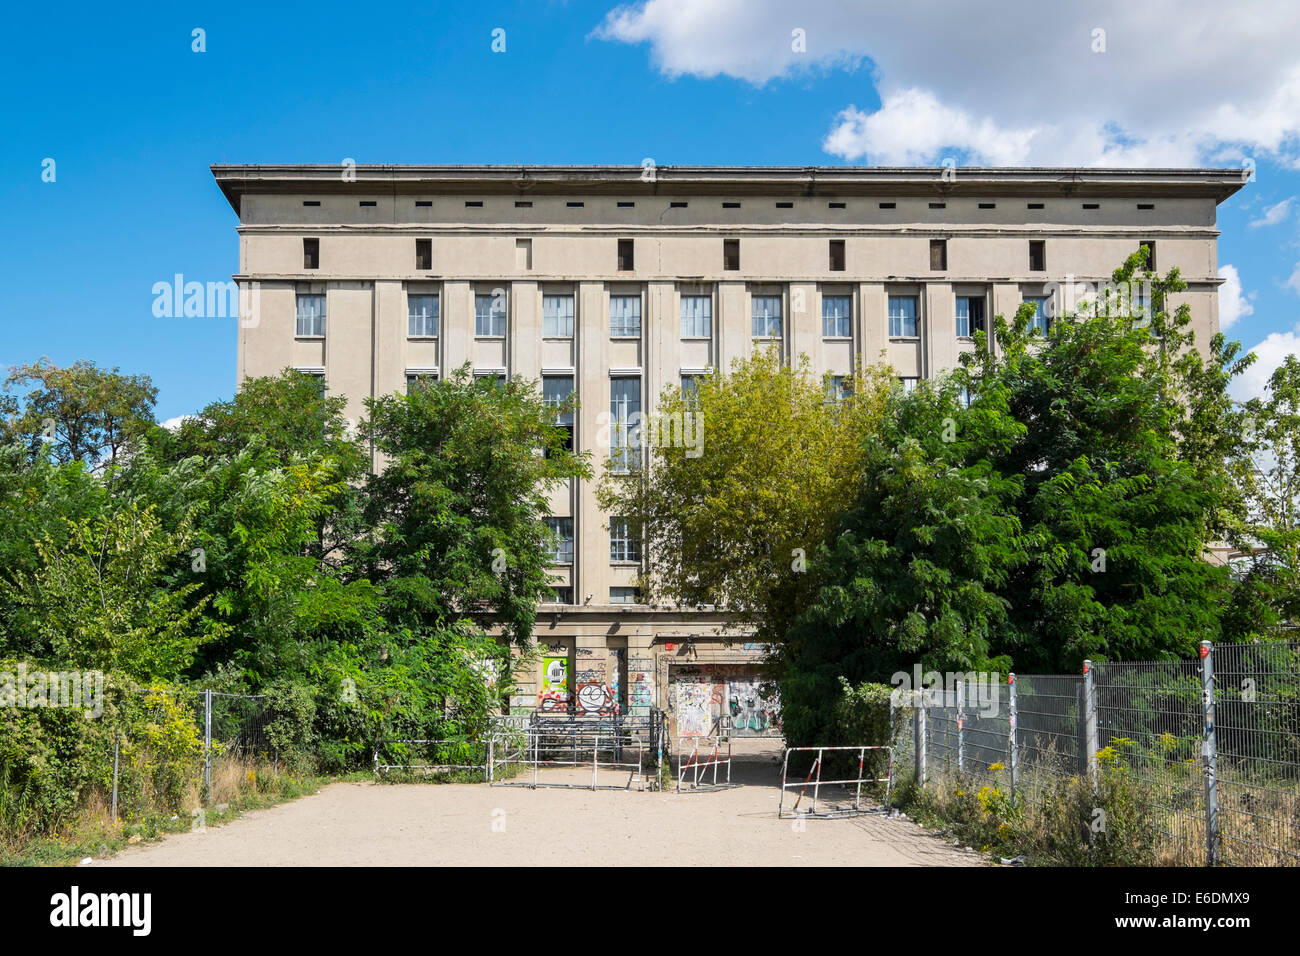 Vue extérieure de l'infâme discothèque Berghain à Berlin Allemagne Banque D'Images